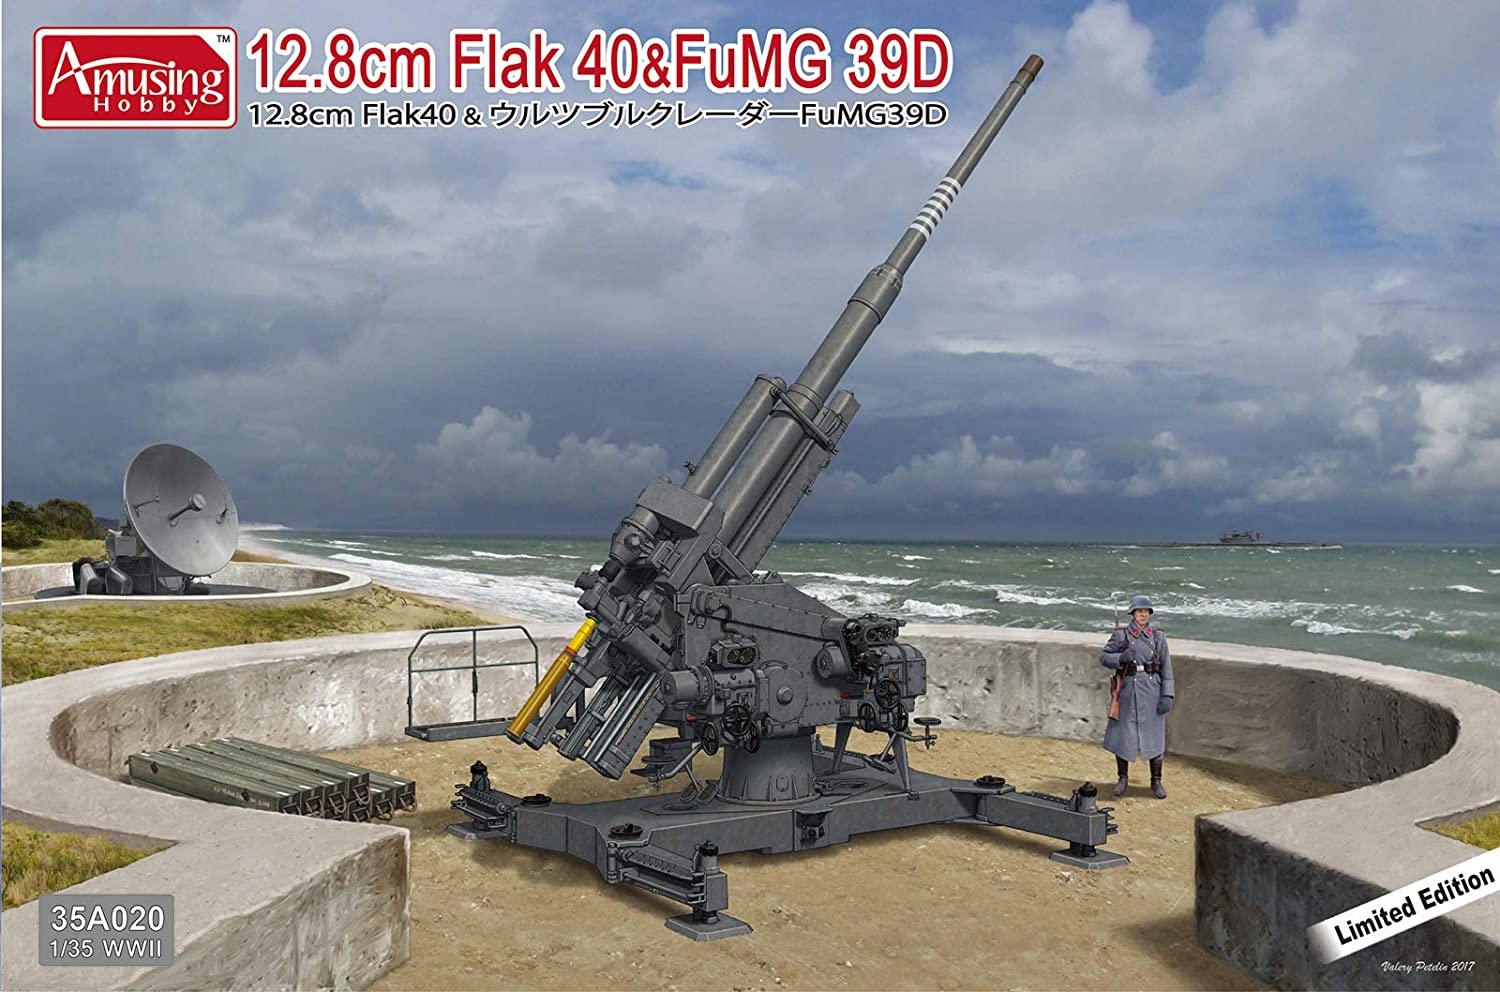 35A020  техника и вооружение  12.8cm Flak 40 & FuMG 39D  (1:35)